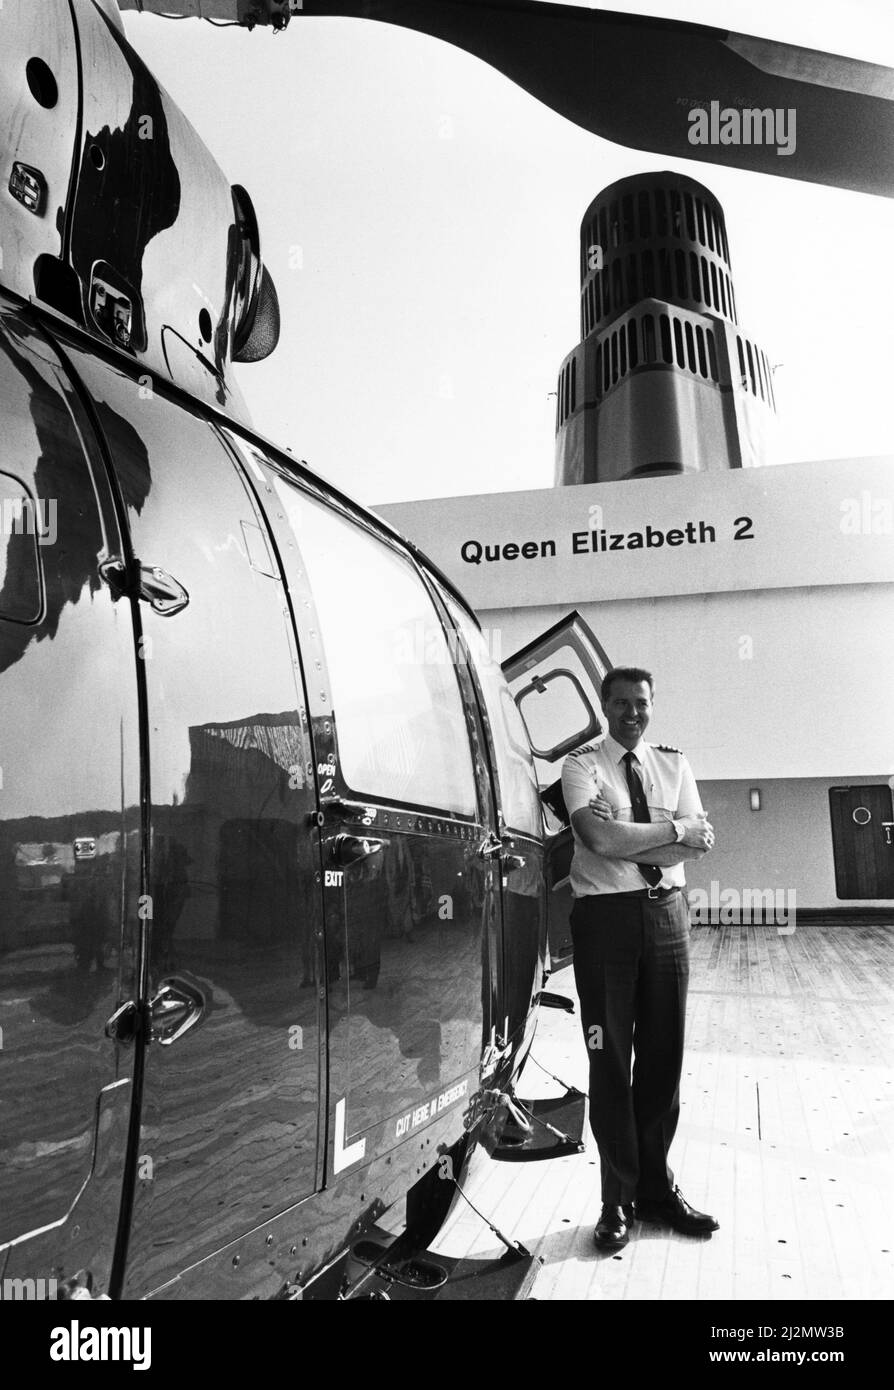 Queen Elizabeth 2, Ozeandampfer, gebaut für die Cunard Line, die von Cunard sowohl als transatlantischer Linienschiff als auch als Kreuzschiff von 1969 bis 2008 betrieben wurde. Im Bild: Hubschrauberpilot, Kapitän David Warren an Bord der QE2 während eines Besuchs in Liverpool, Merseyside. 24.. Juli 1990. Stockfoto